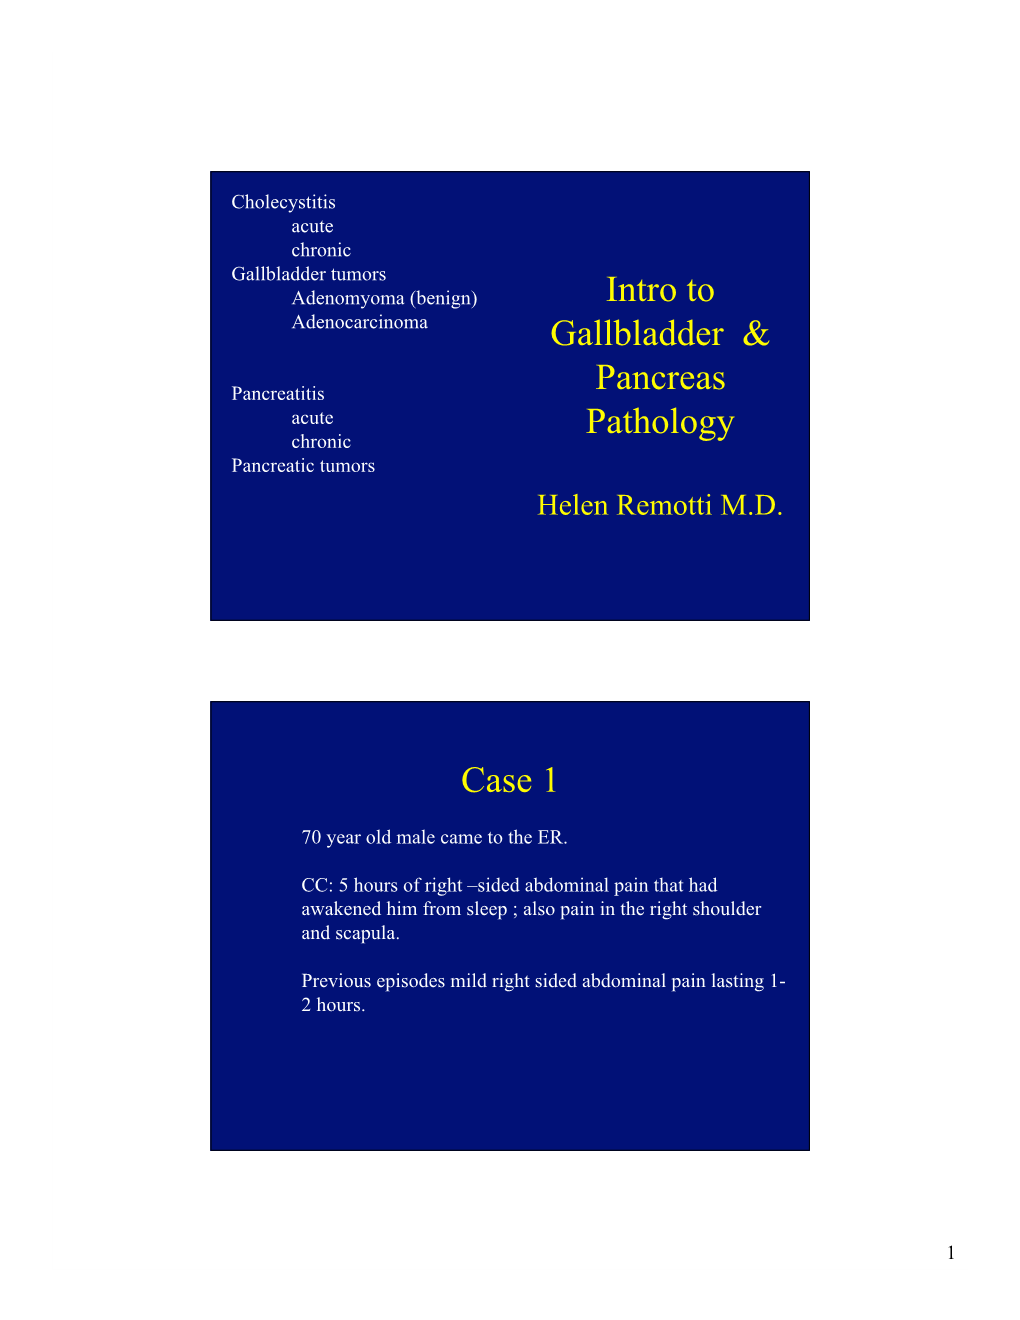 Intro to Gallbladder & Pancreas Pathology